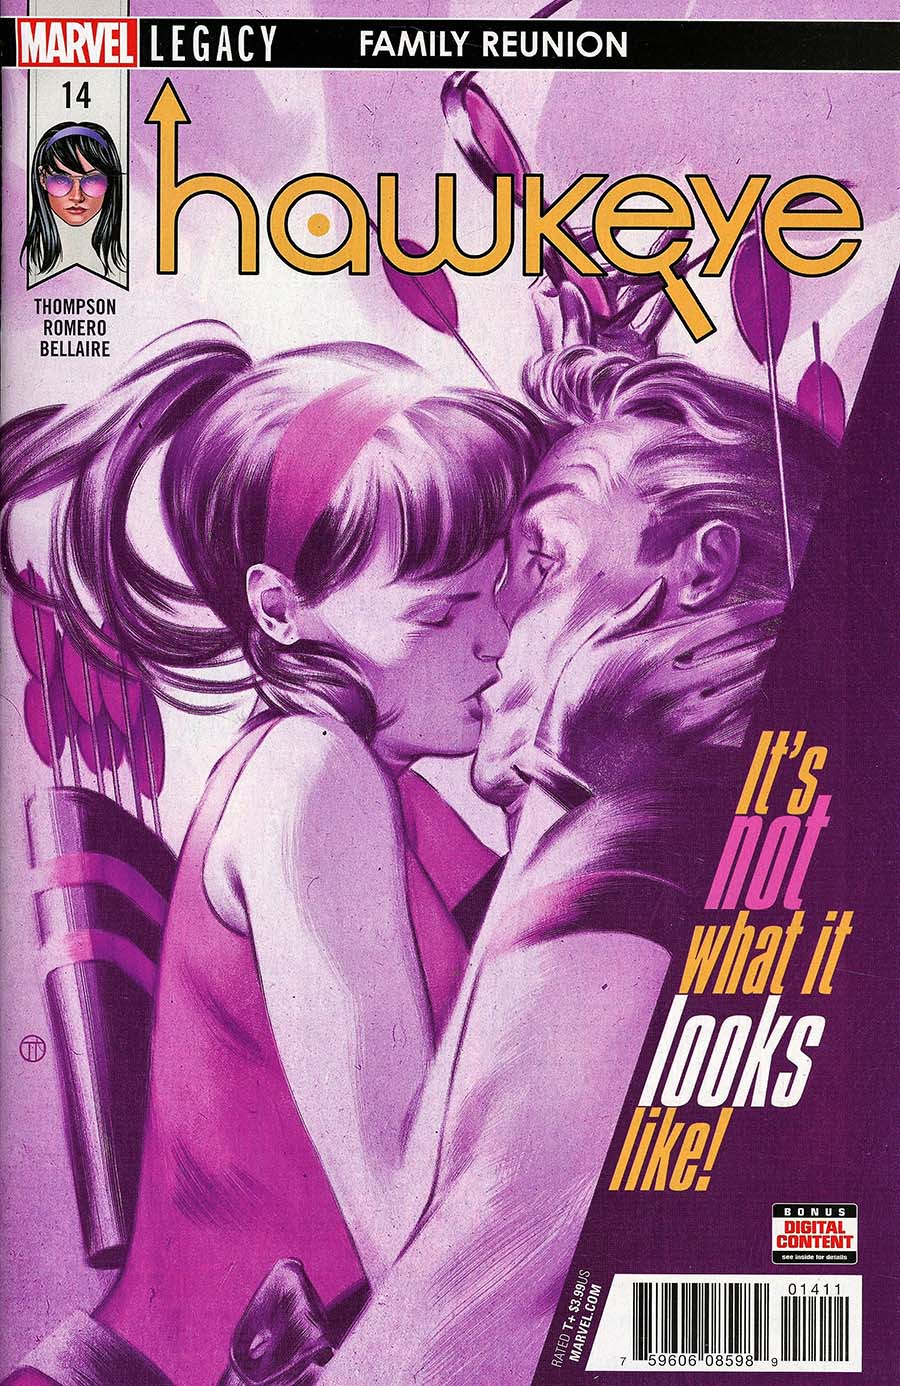 Hawkeye Vol 5 #14 (Marvel Legacy Tie-In)